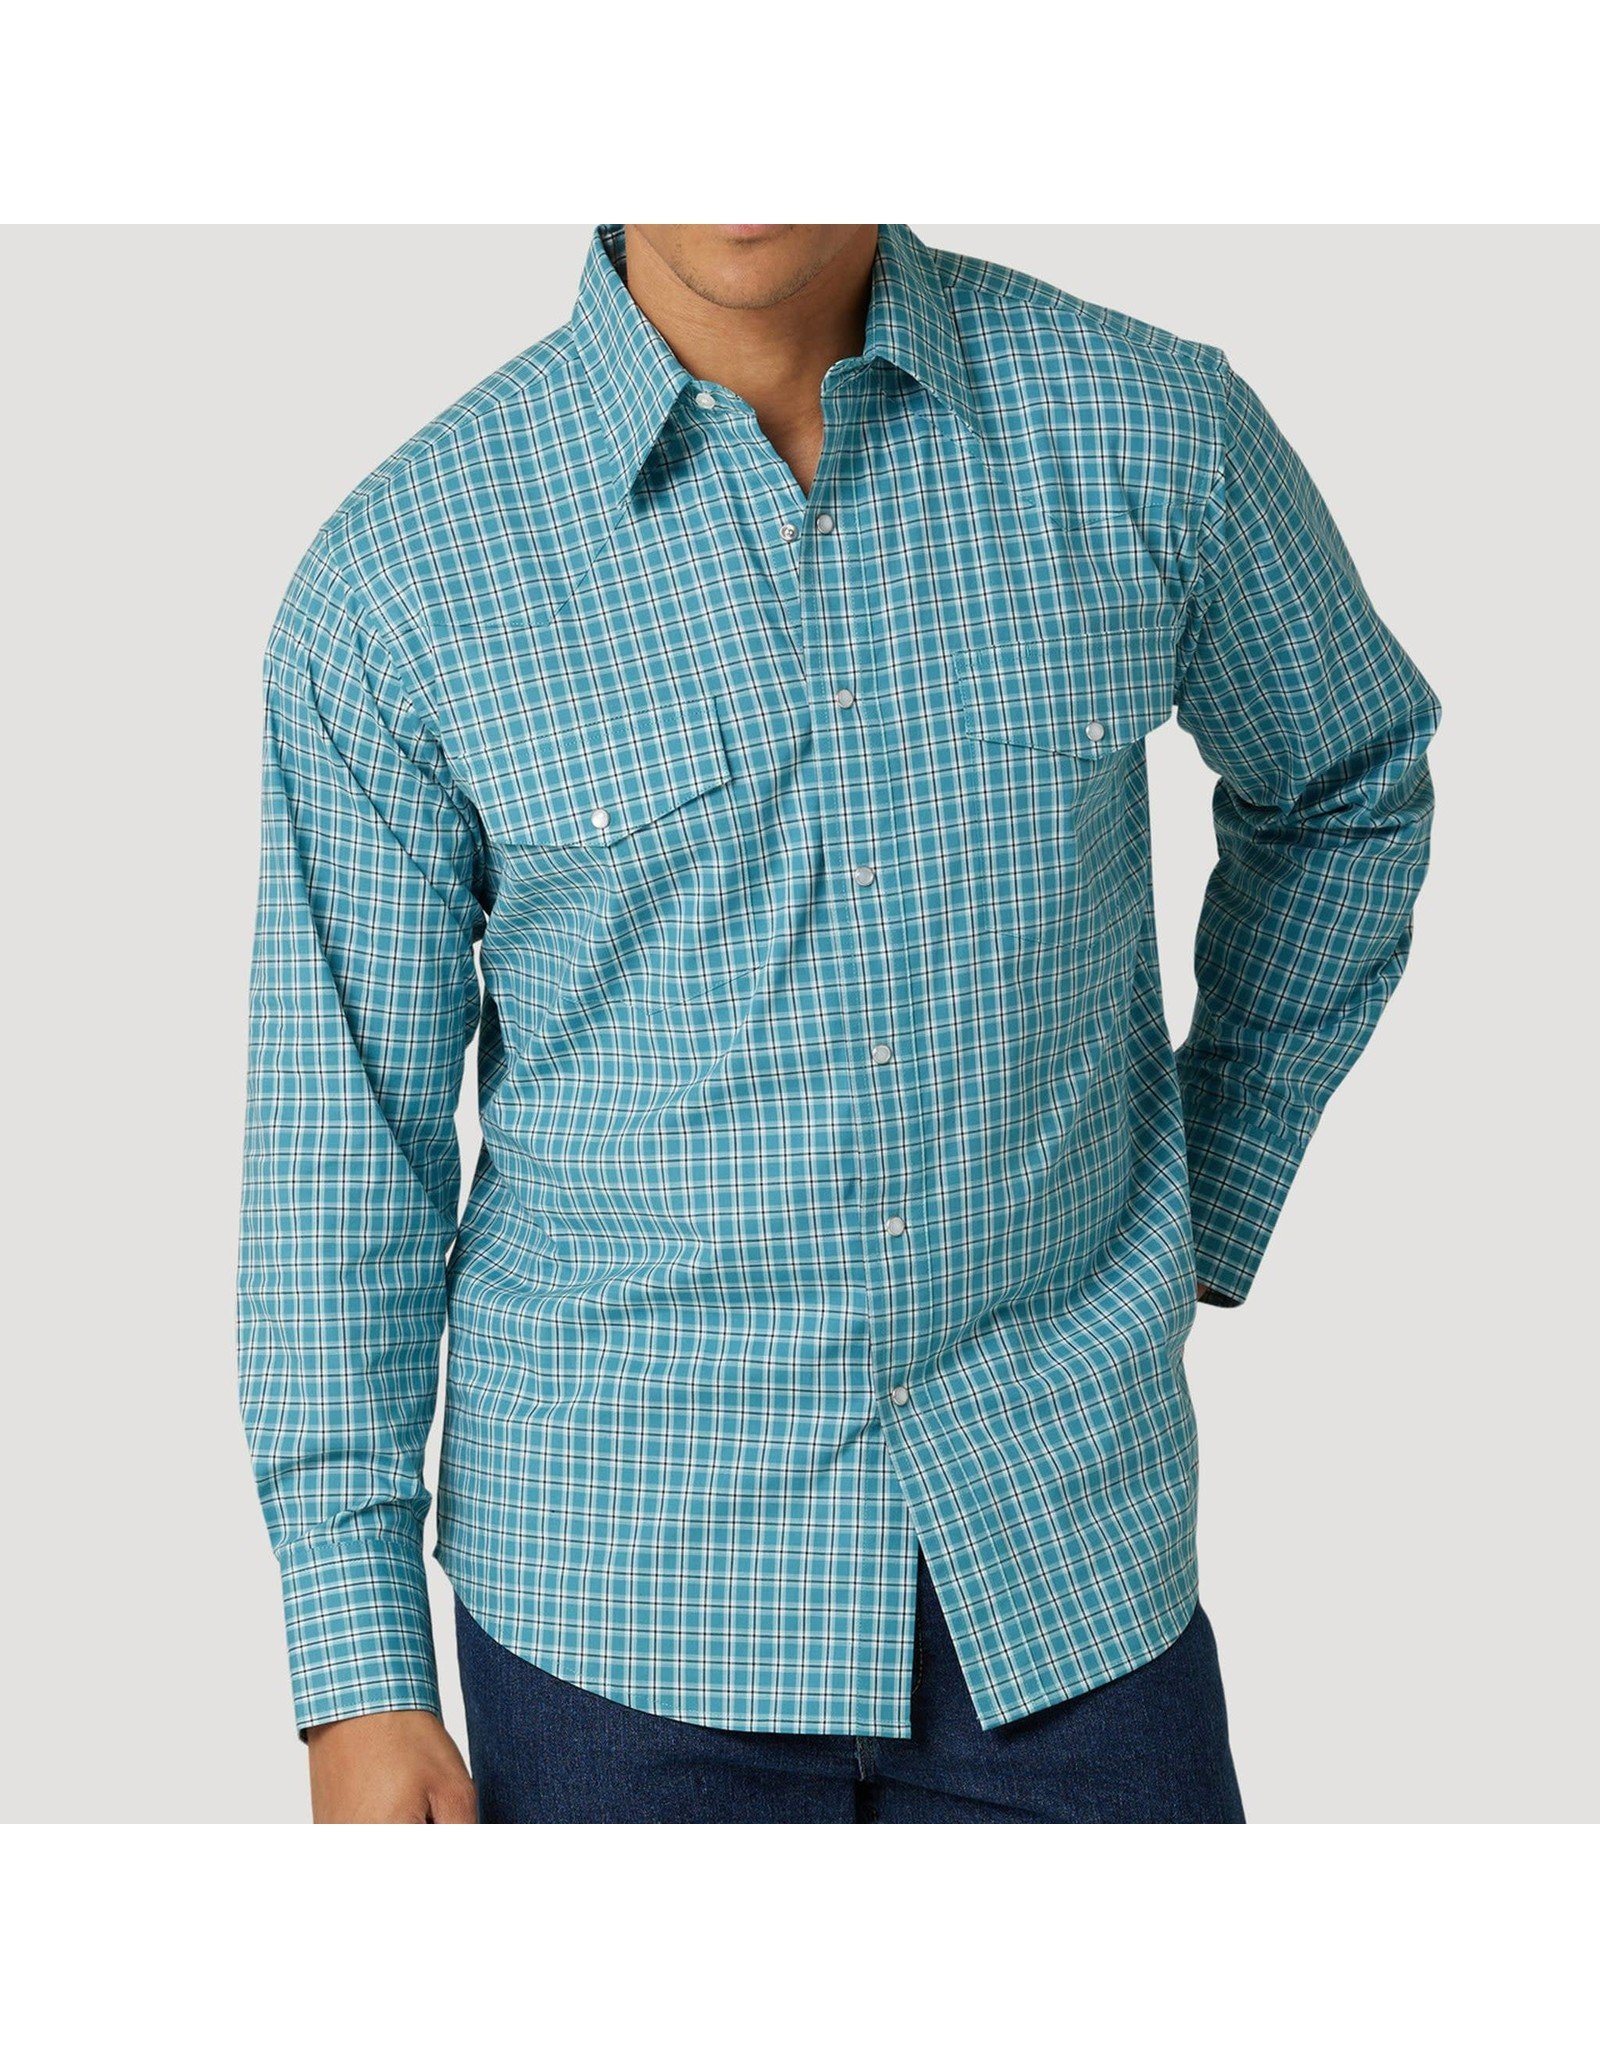 Wrangler Men's Long Sleeve 112317089 Teal Plaid Wrinkle Resistant Shirt